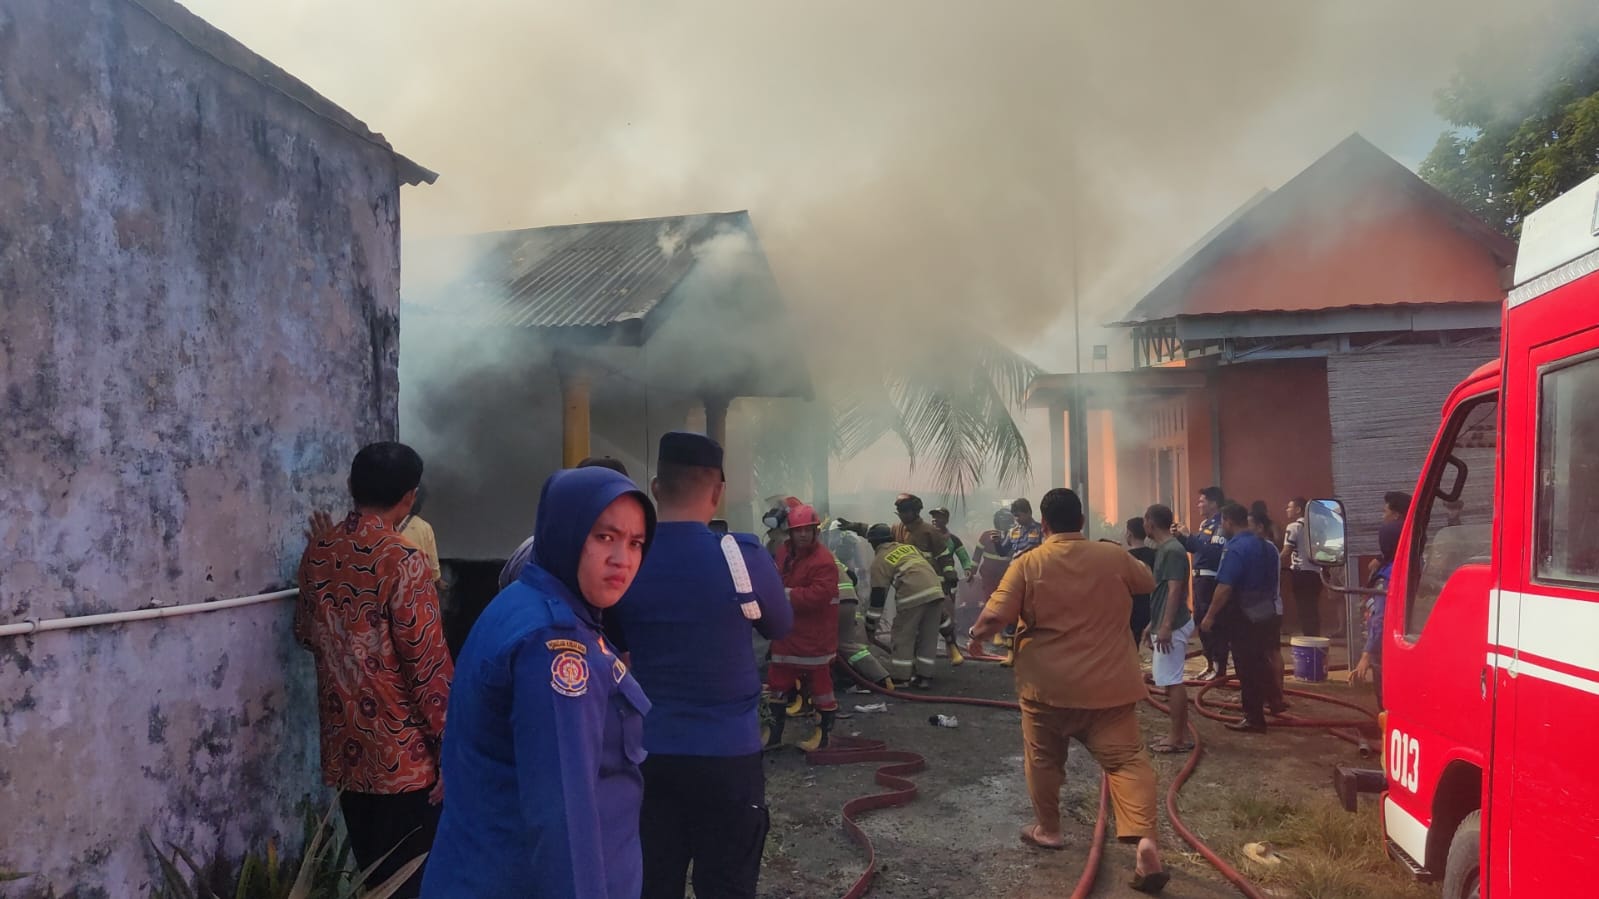 Rumah Kontrakan Milik Caleg Terbakar, Sejumlah Barang Penghuni Rumah Hangus